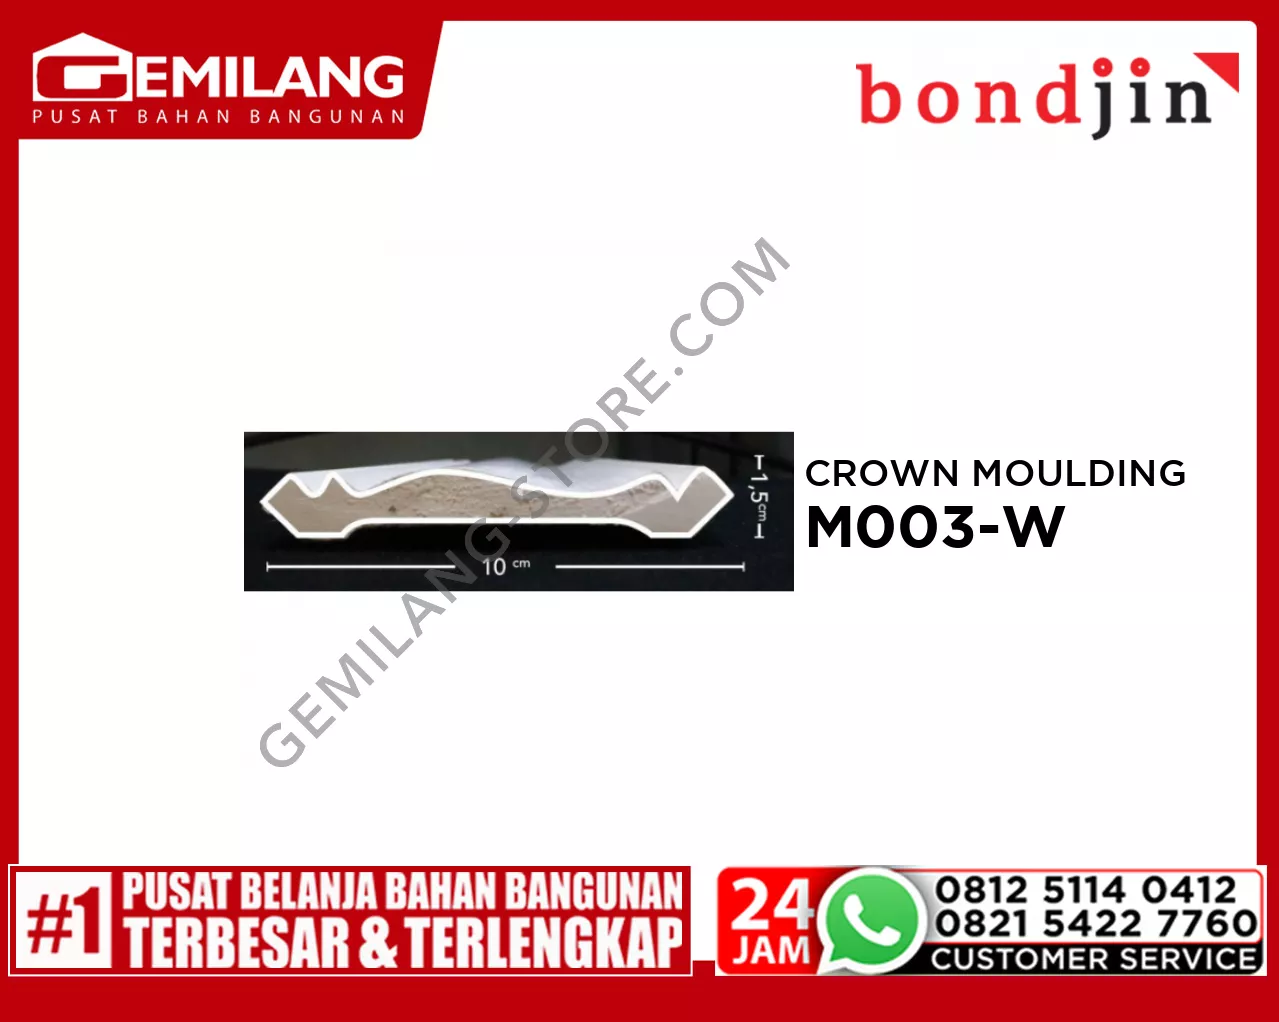 BONDJIN CROWN MOULDING M003-W (100 x 2400 x 15T)